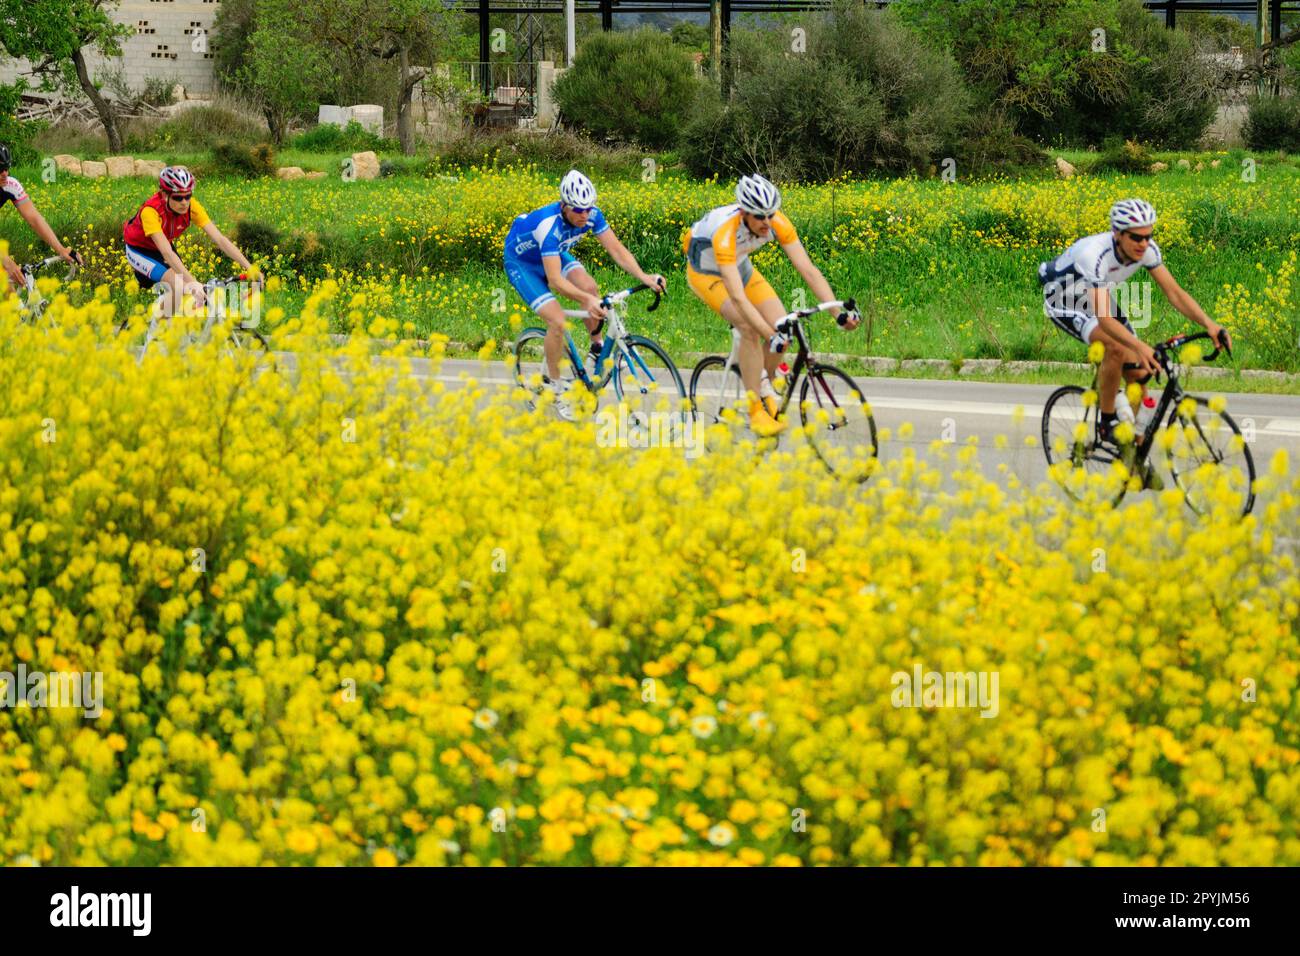 ciclistas entre cultivos de colza -Brassica napus-, carretera de Algaida, llucmajor, mallorca, islas baleares, españa, europa Stock Photo